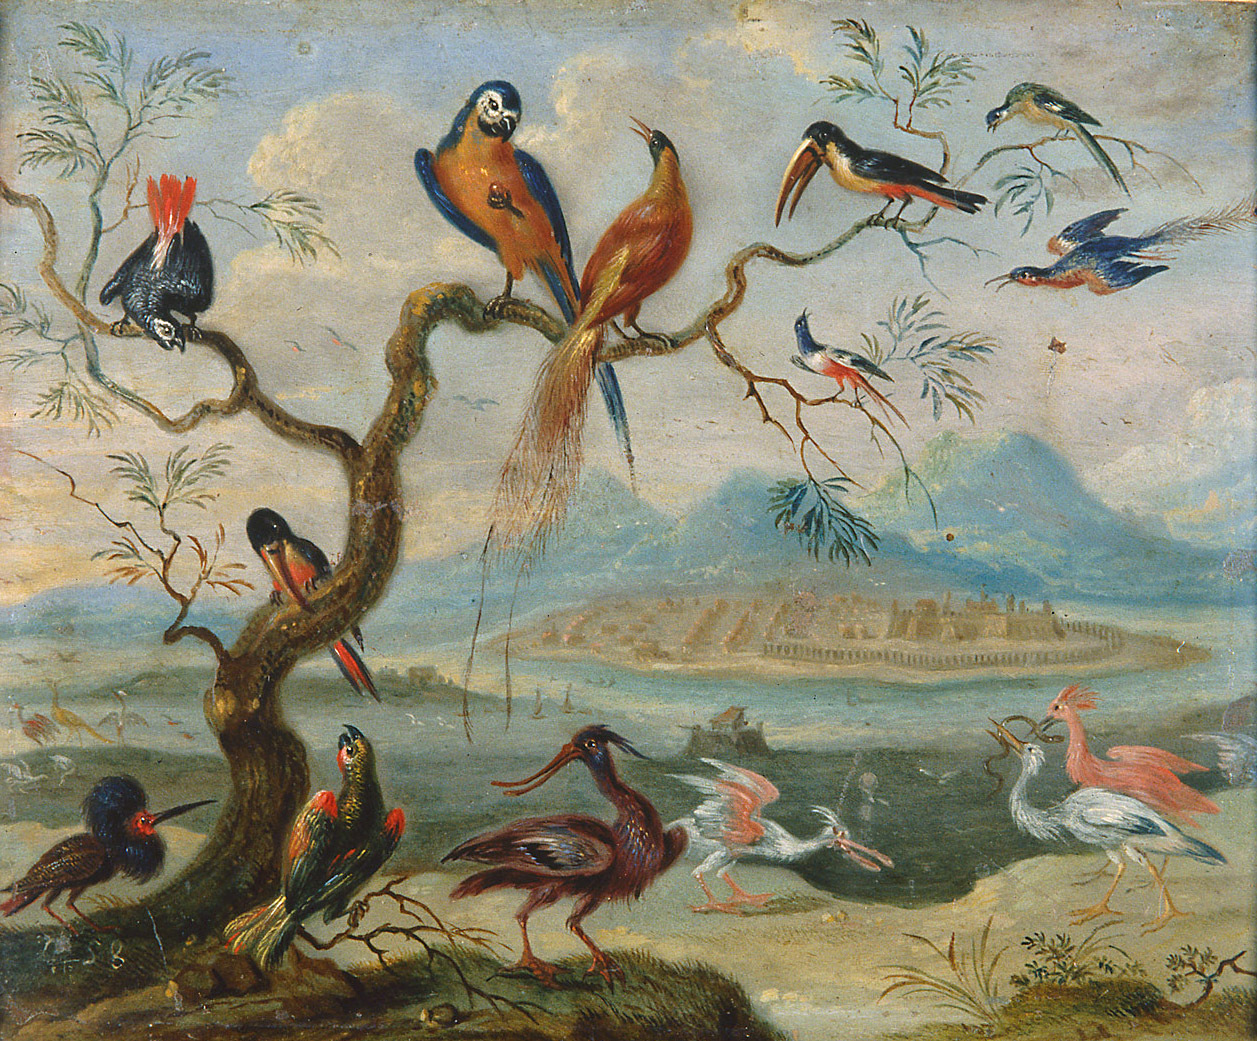 Ferdinand van Kessel | Ansichten aus den vier Weltteilen mit Szenen von Tieren: St. Merryn | Displayed motifs: White dove, Bird, Parrot, Goose, Duck, Angel, 